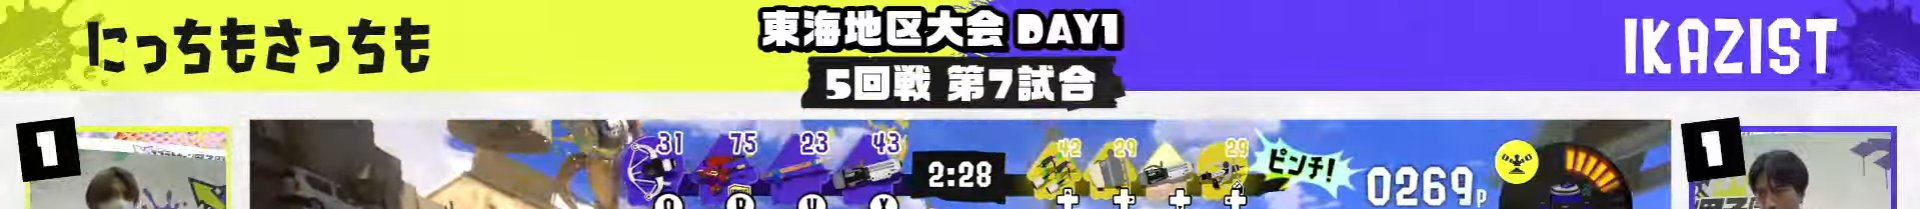 【スプラ甲子園】メロンチーム敗退によりたいじチームのハードルが下がったという事実【スプラトゥーン3】